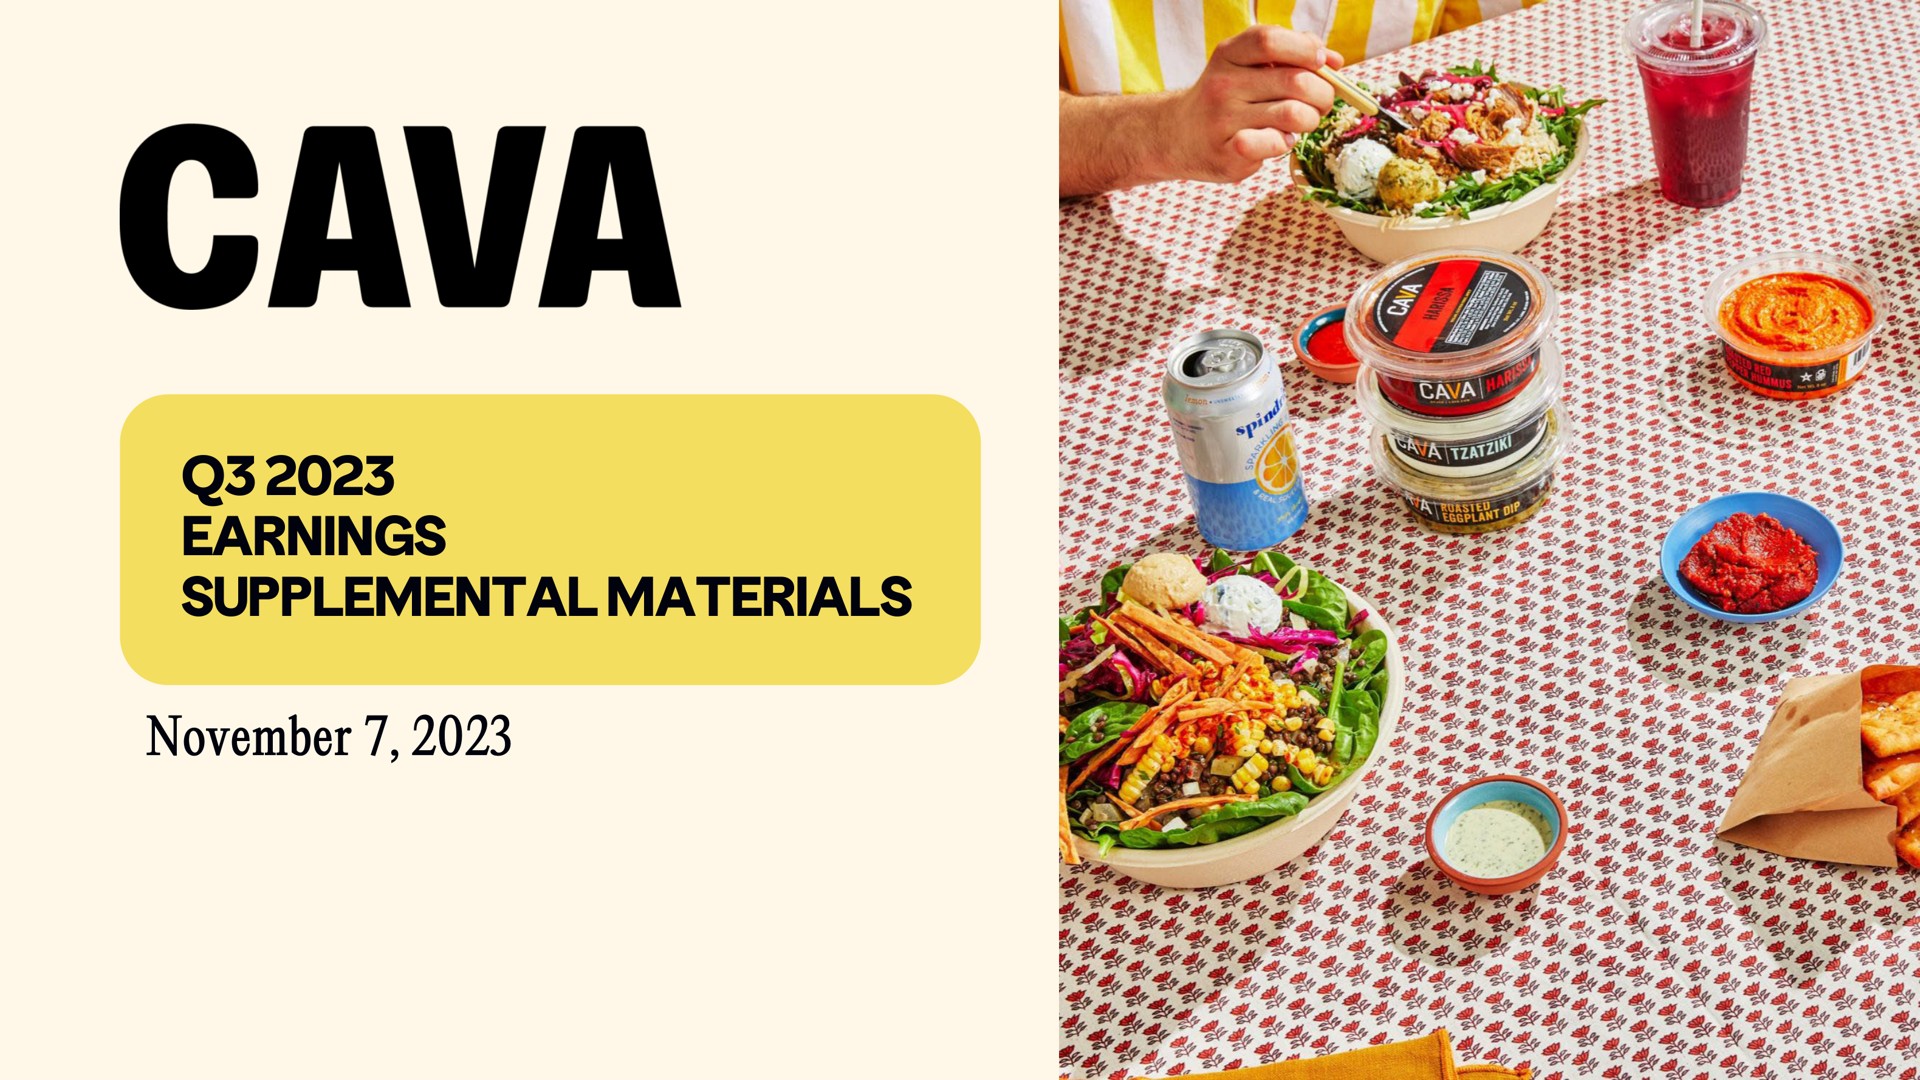 cava earnings supplemental materials | CAVA